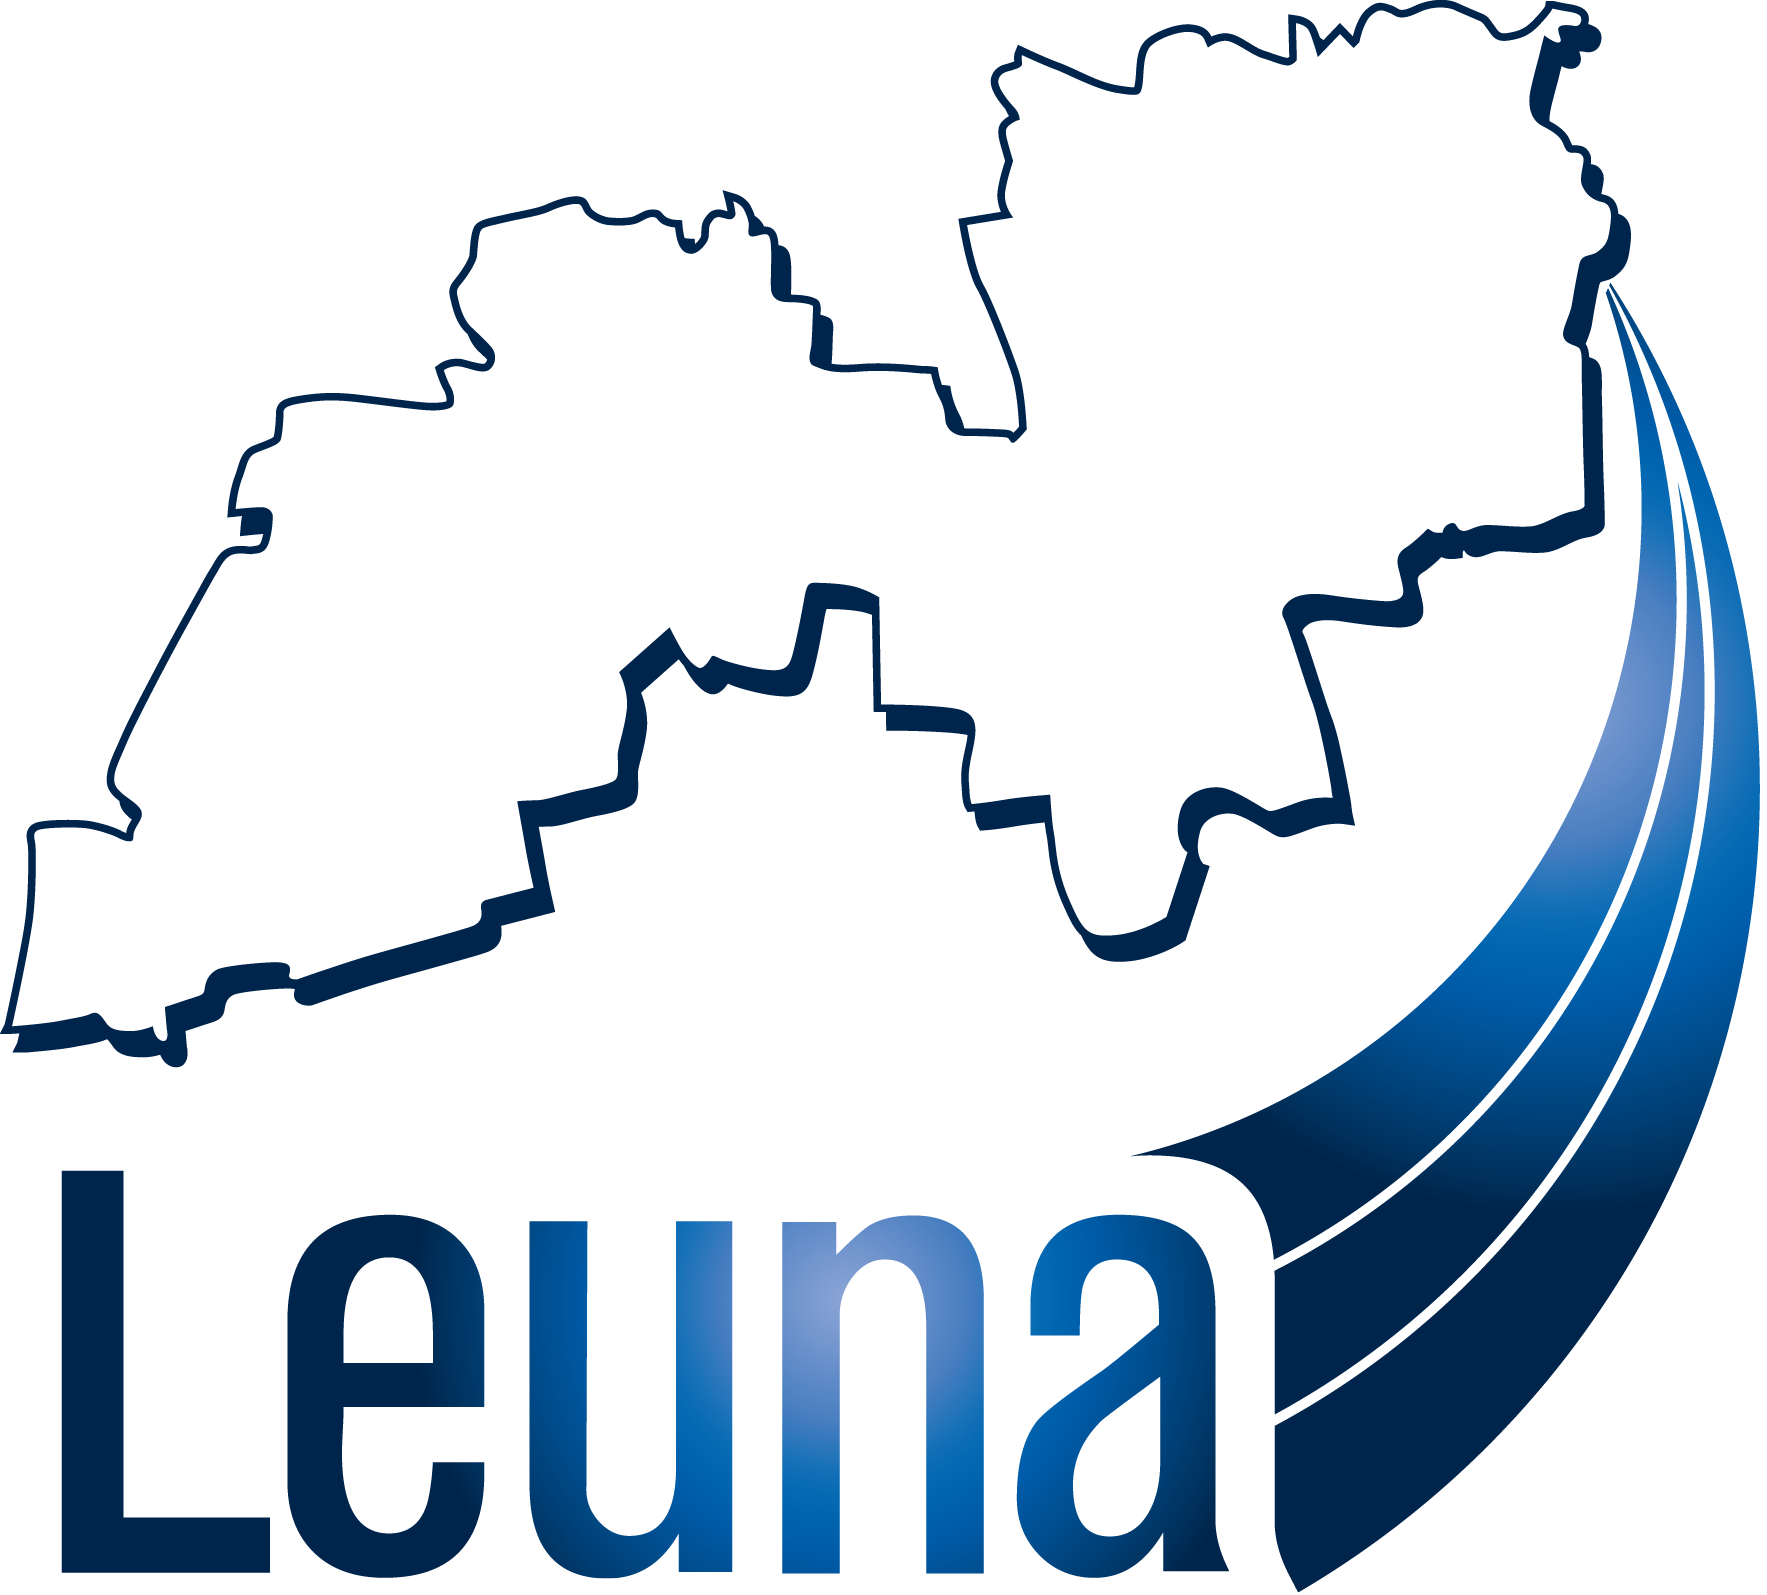 stadtleuna 300ppi leuna logo bei verwendung info per email h.hickmann@stadtleuna.de